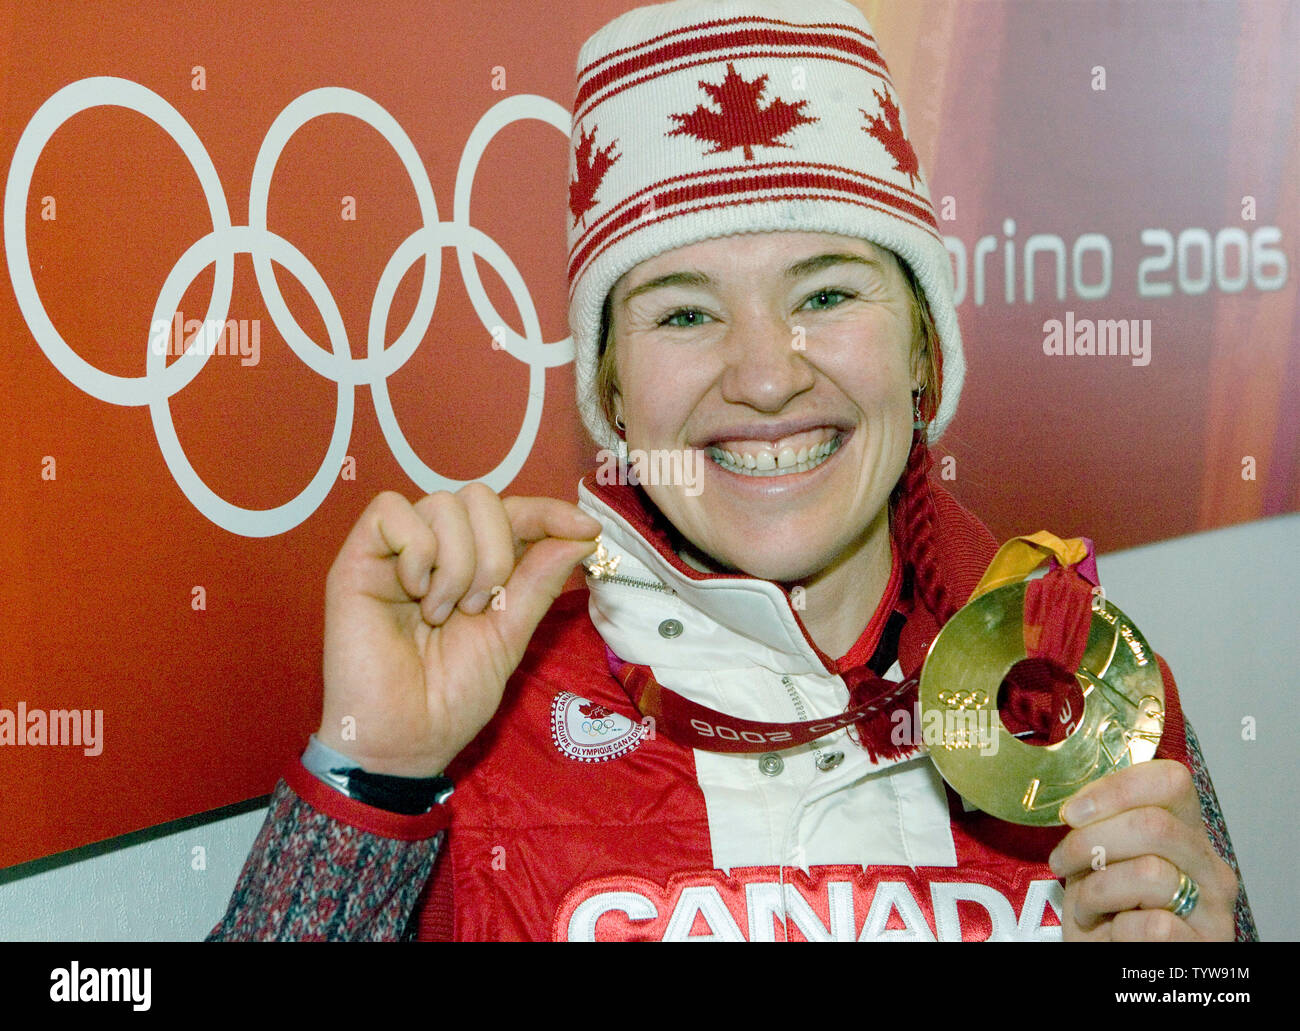 Clara Hughes du Canada montre son a remporté la médaille d'or dans l'épreuve féminine du 5000m en patinage de vitesse à l'Oval Lingotto dans les 2006 Jeux Olympiques d'hiver de Turin, le 25 février 2006. (Photo d'UPI/Heinz Ruckemann) Banque D'Images